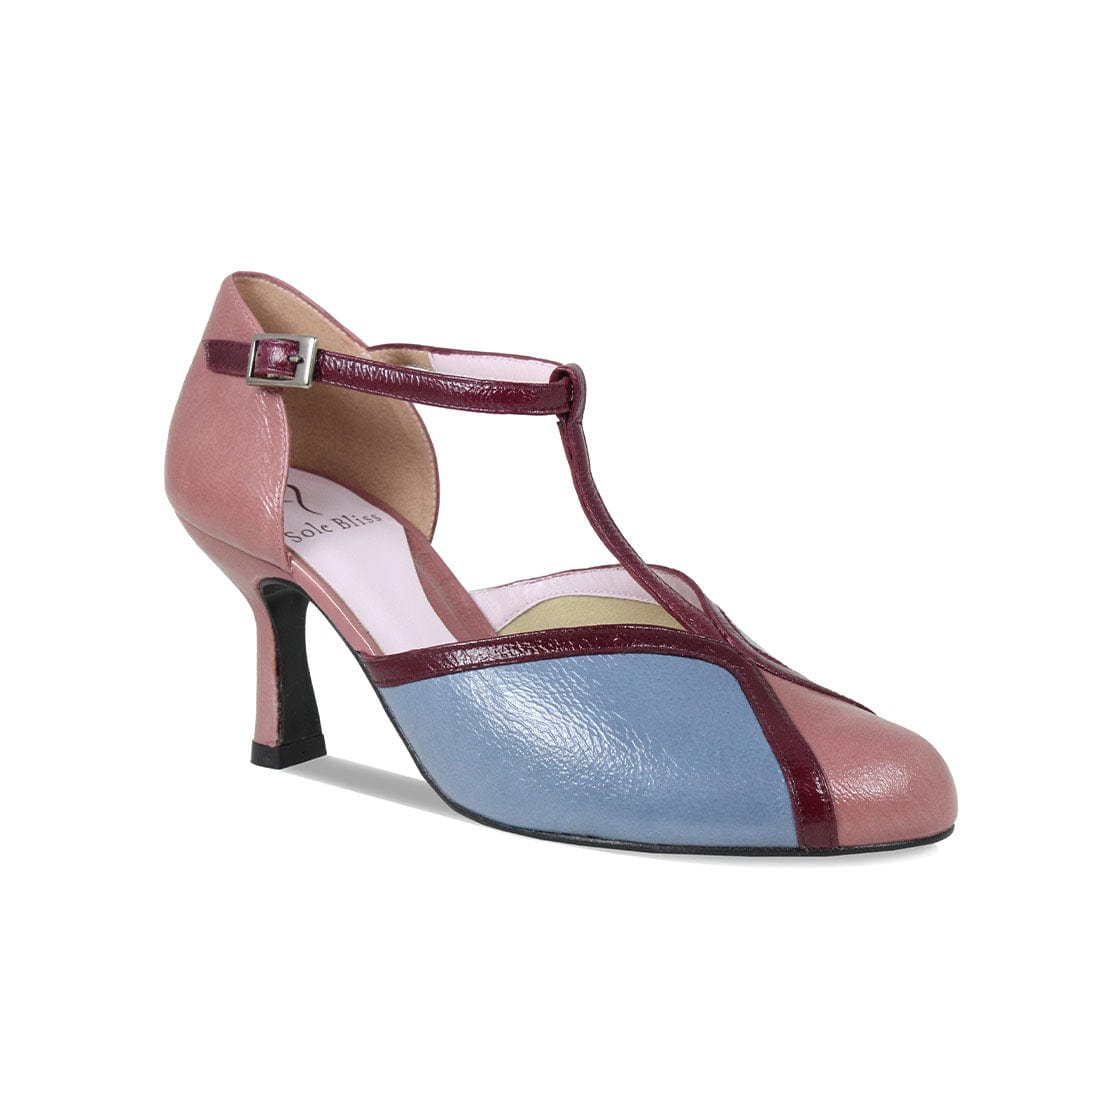 Women's Margot Bags Shoes - 6 Available Colors - Arche